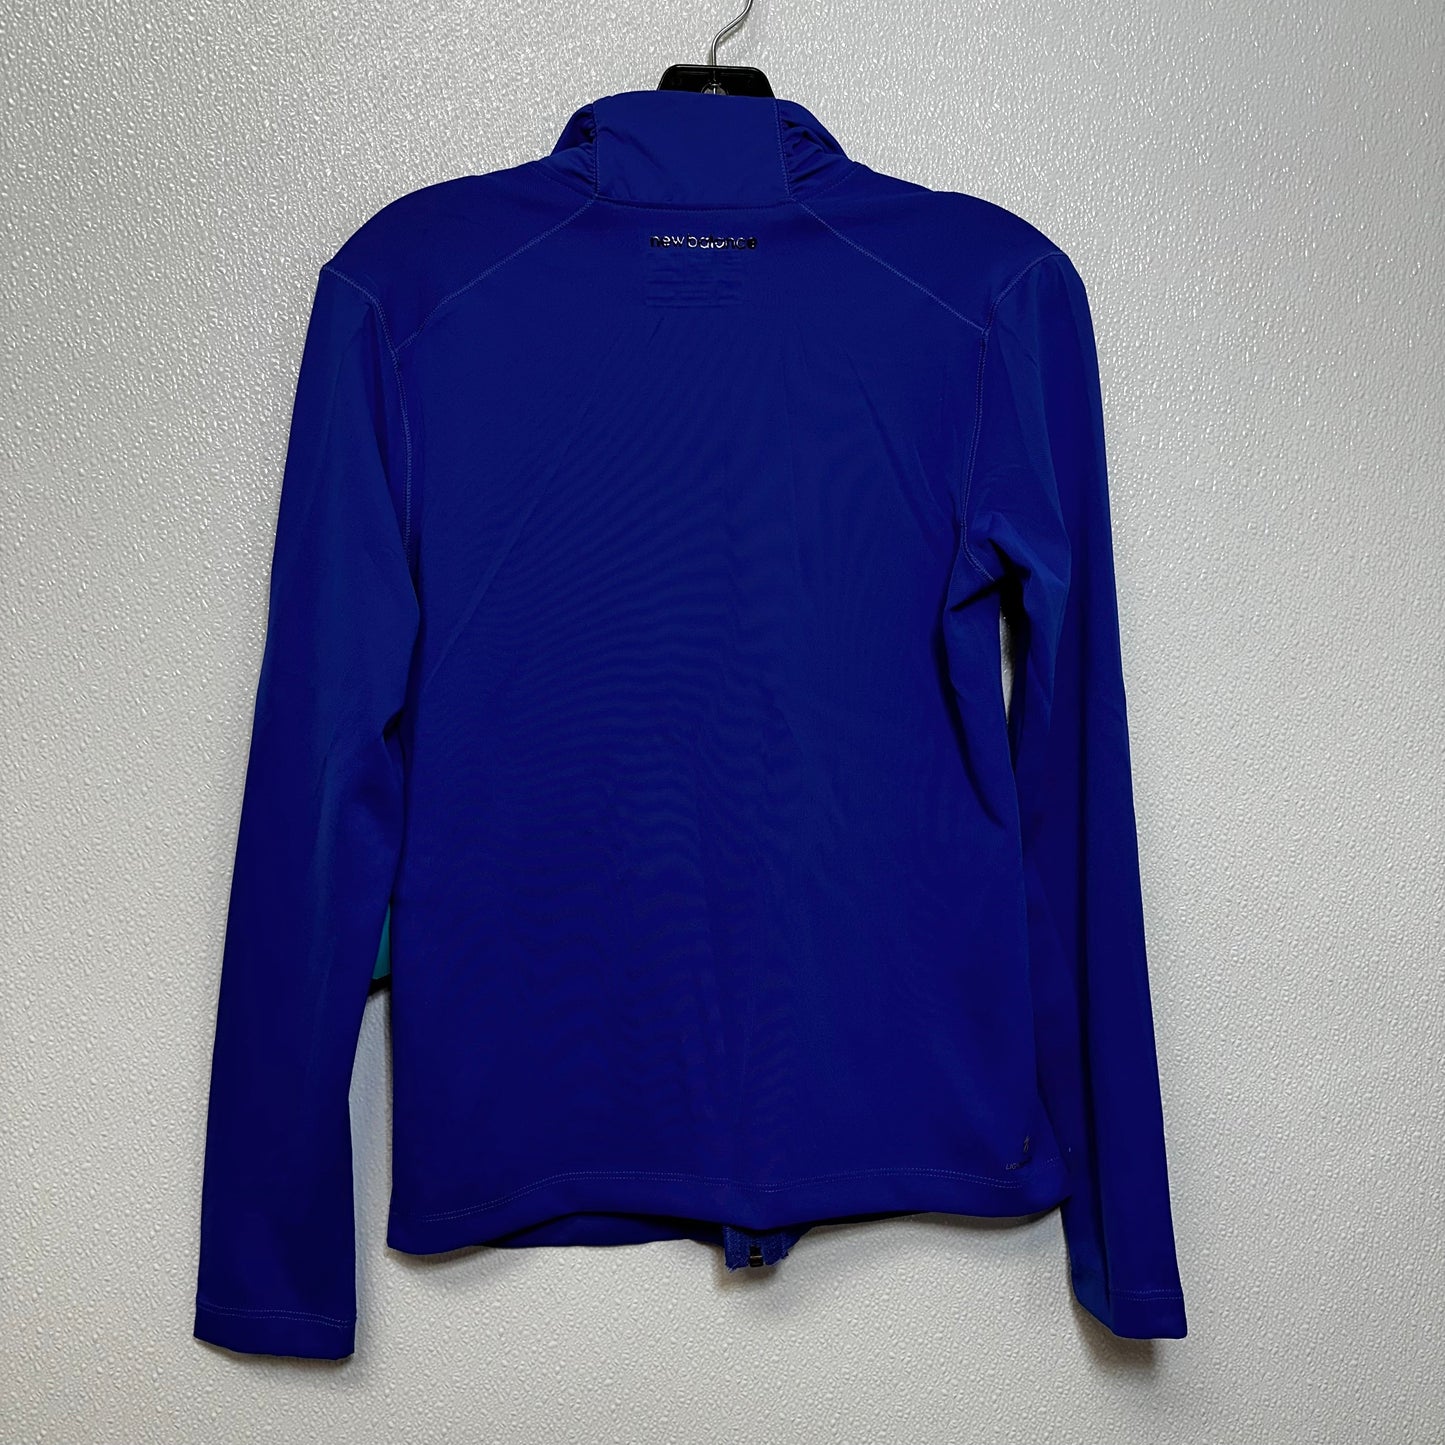 Royal Blue Athletic Jacket New Balance, Size S